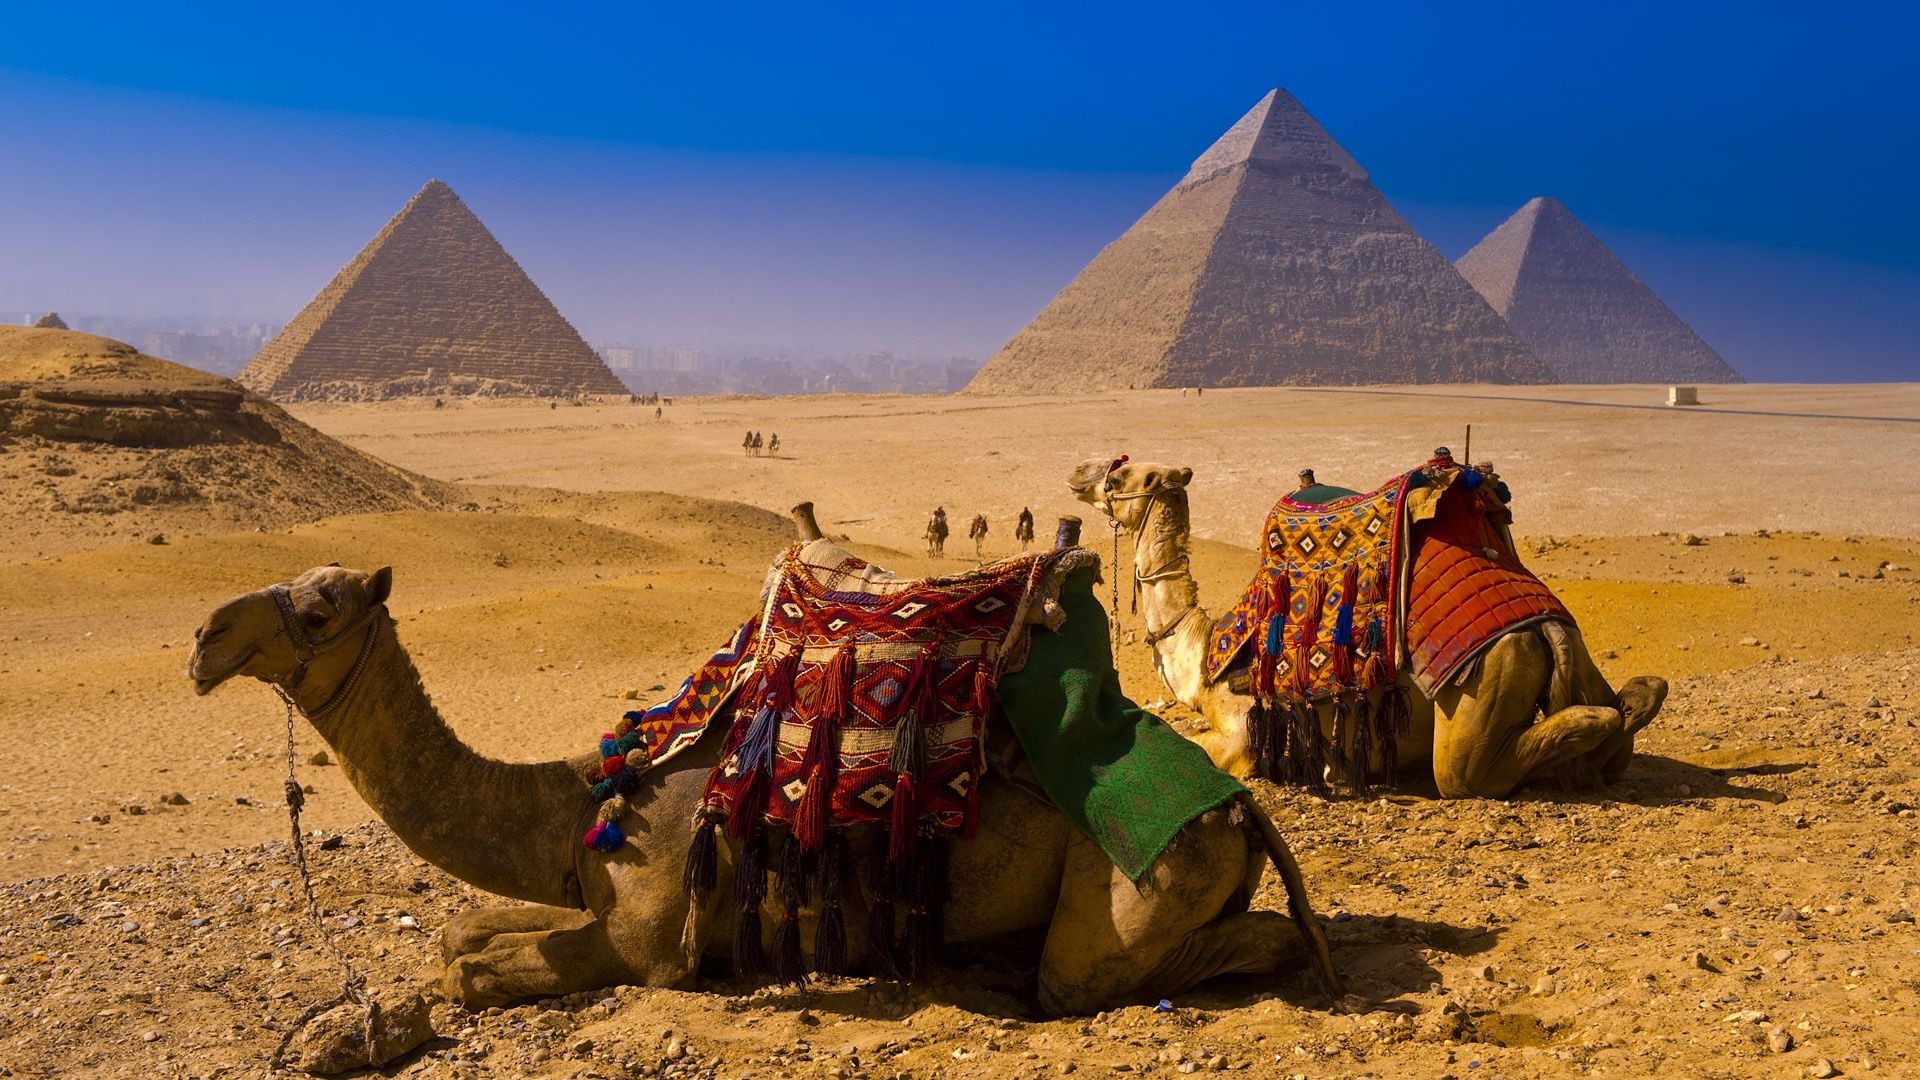 знаменитые места верблюд пирамида пустыня бедуин сфинкс путешествия фараон млекопитающее арабский верблюд два могила один номад песок сидит дневной свет сухой поезд туризм